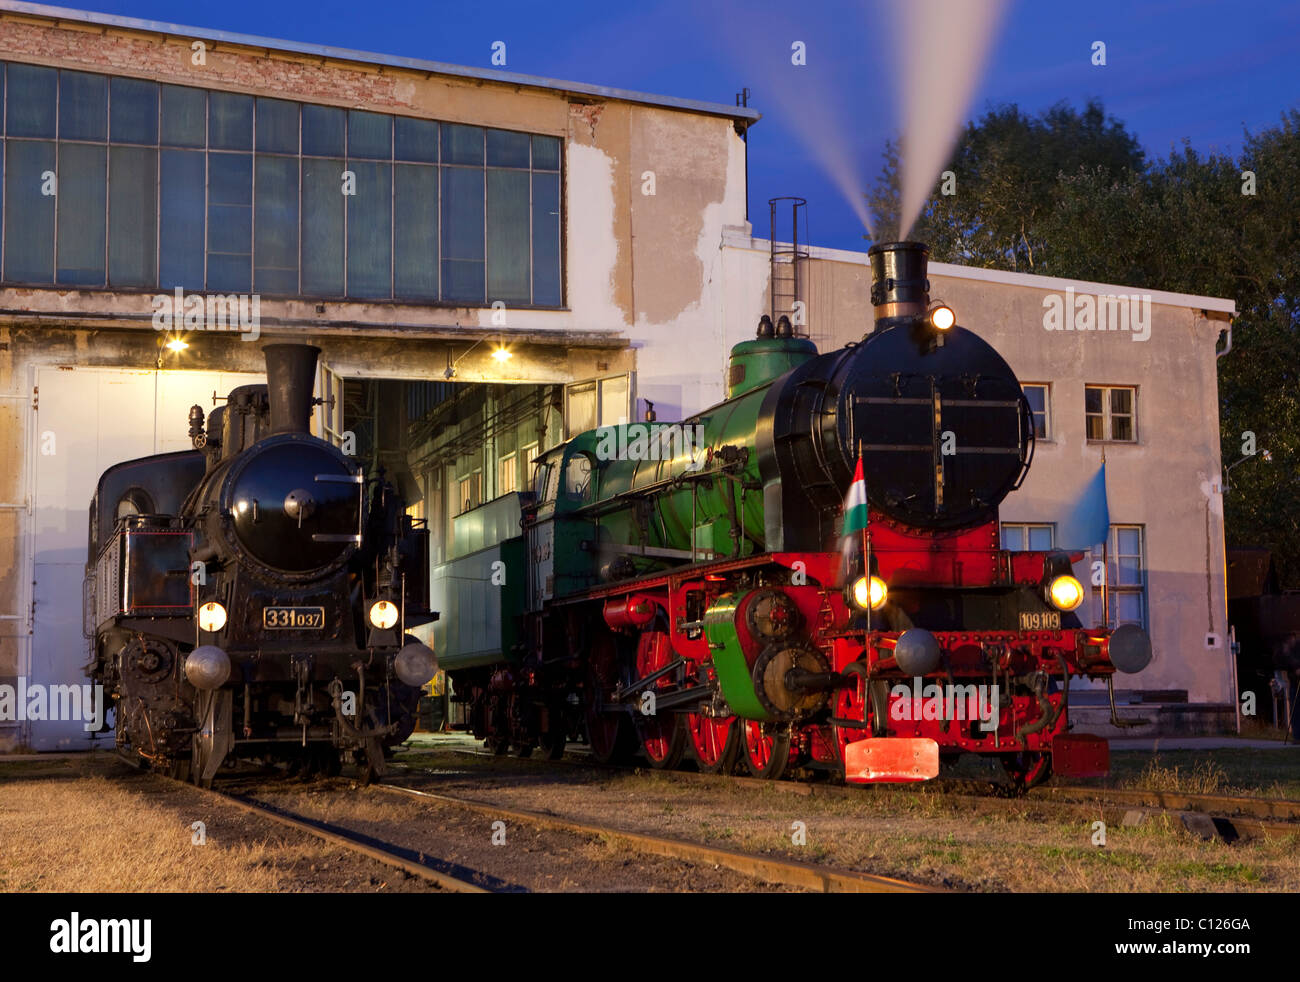 Dampf-Lokomotive 331.037, Slowakei, und eine Dampflok der Linie 109, Eisenbahn Museum Strasshof, Österreich, Ungarn, Europa Stockfoto